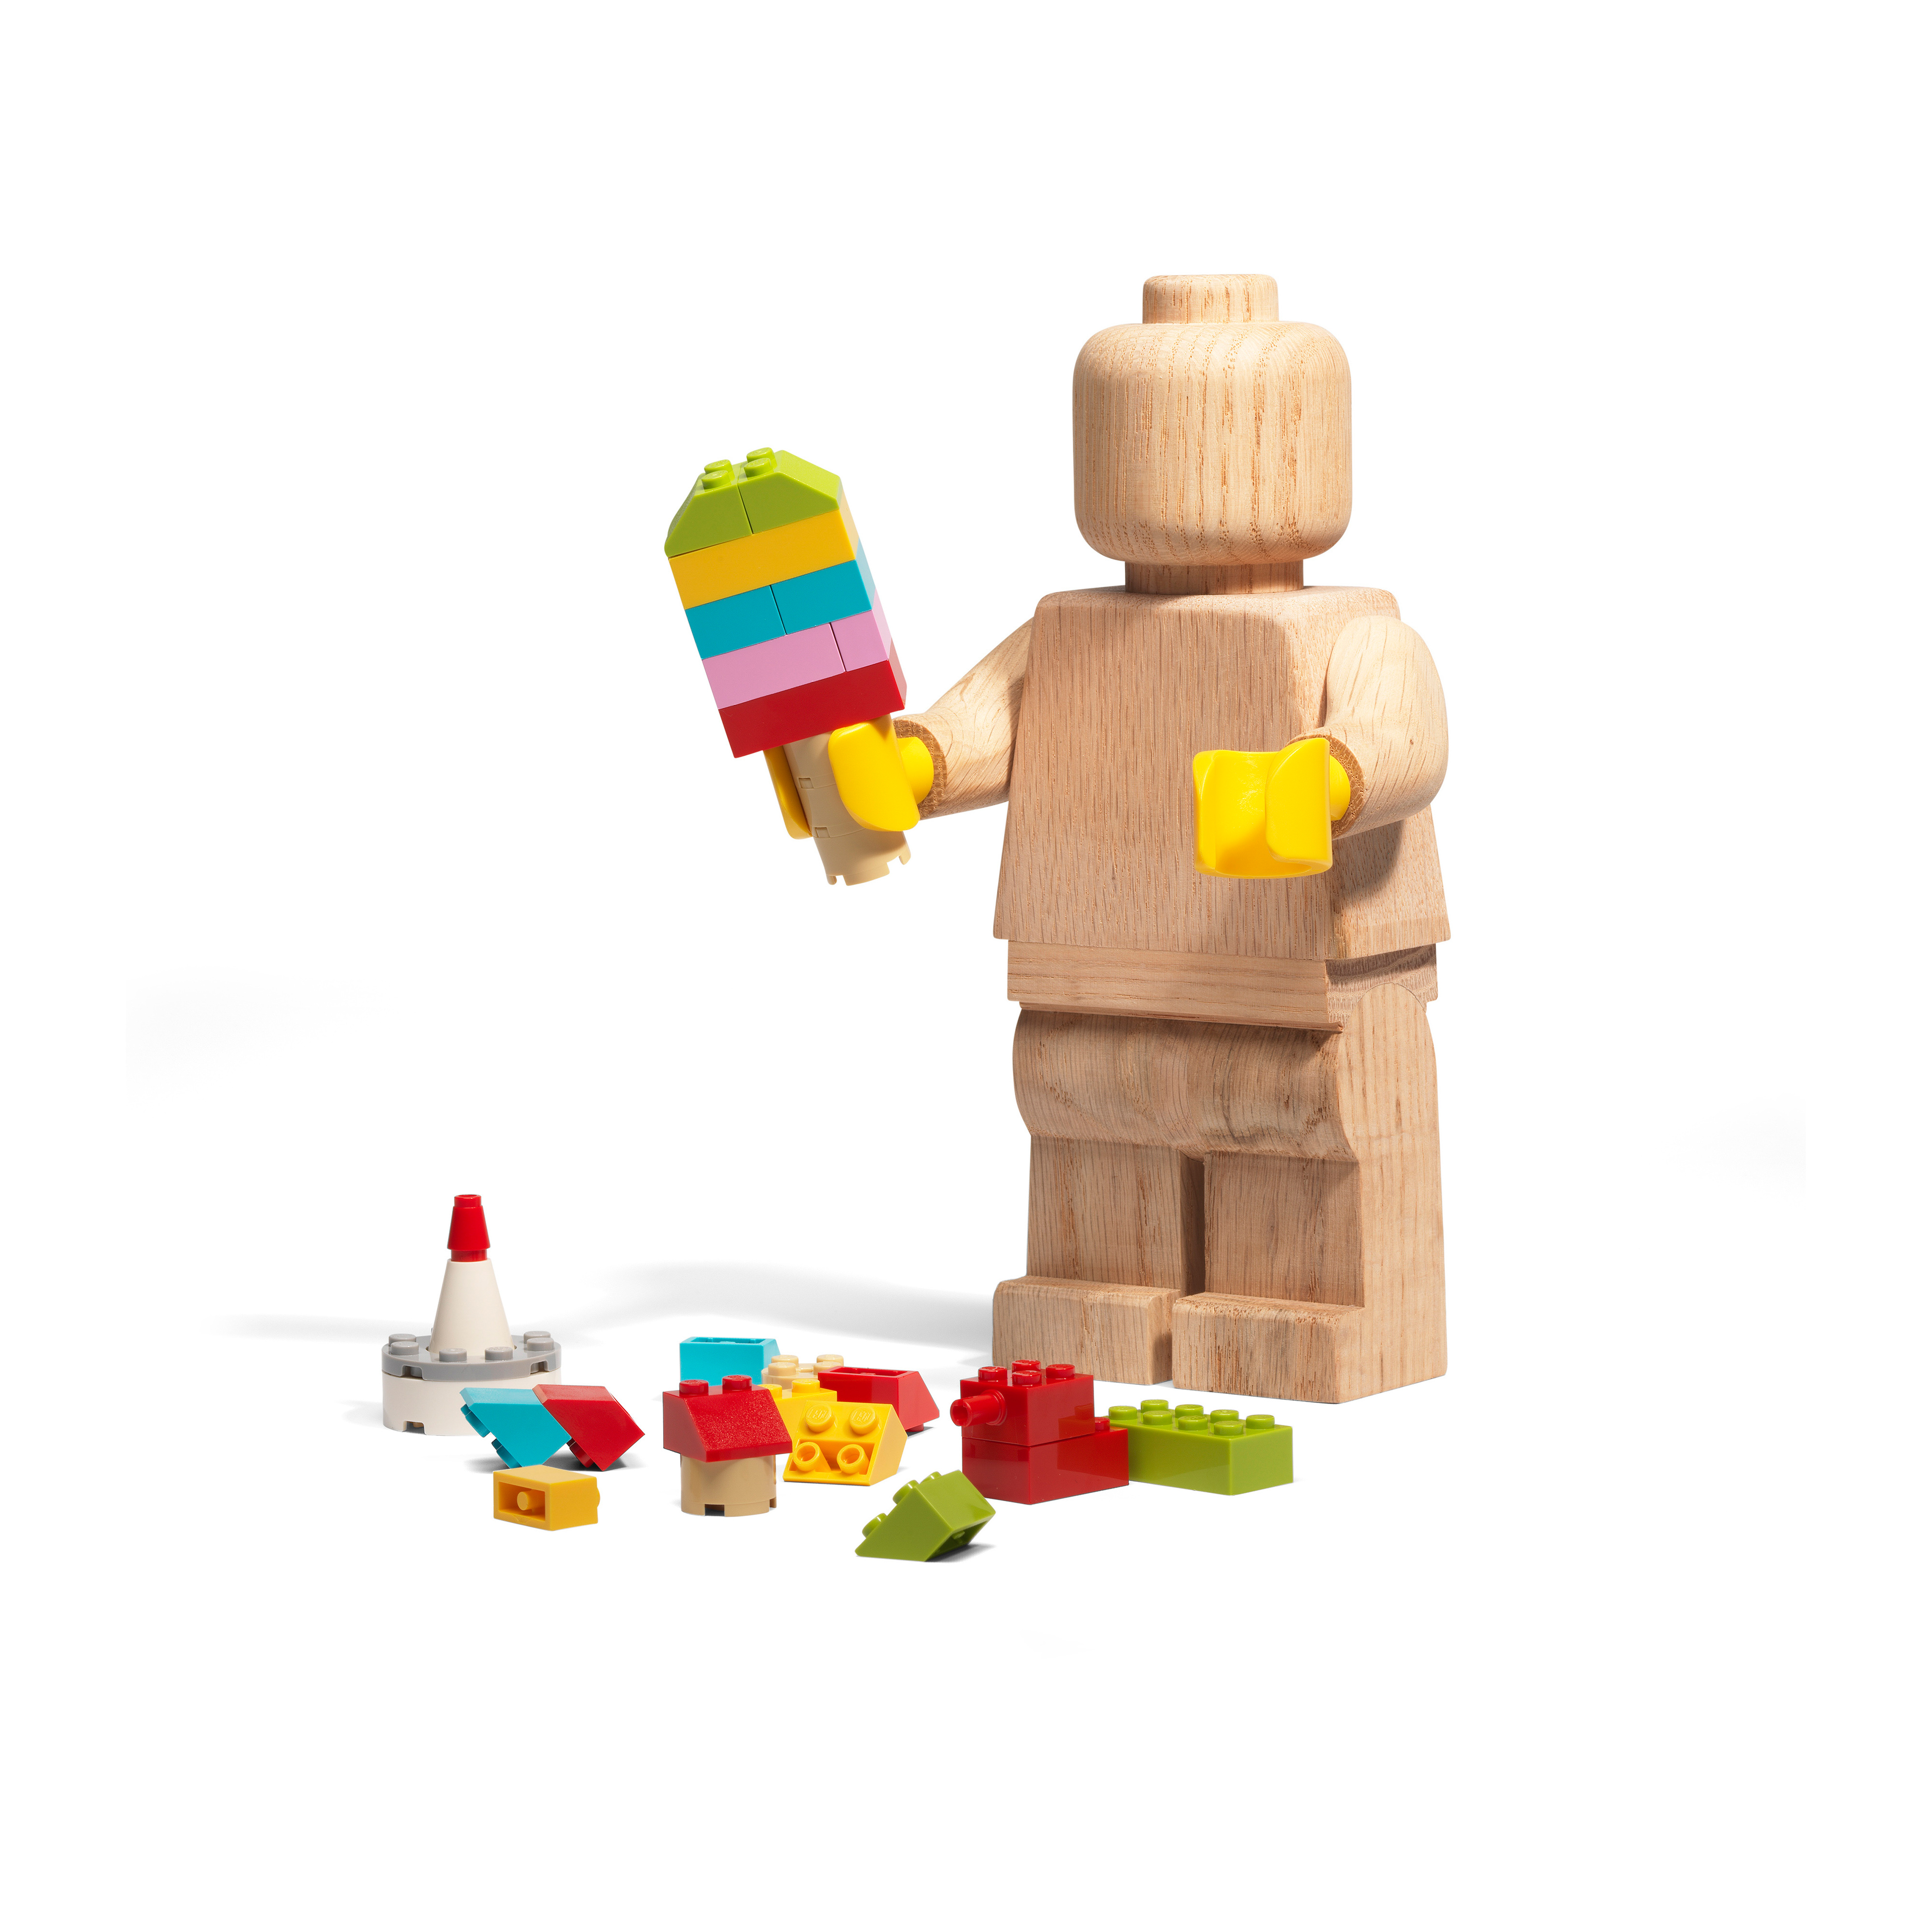 LEGO houten minifiguur van - NordicNest.nl